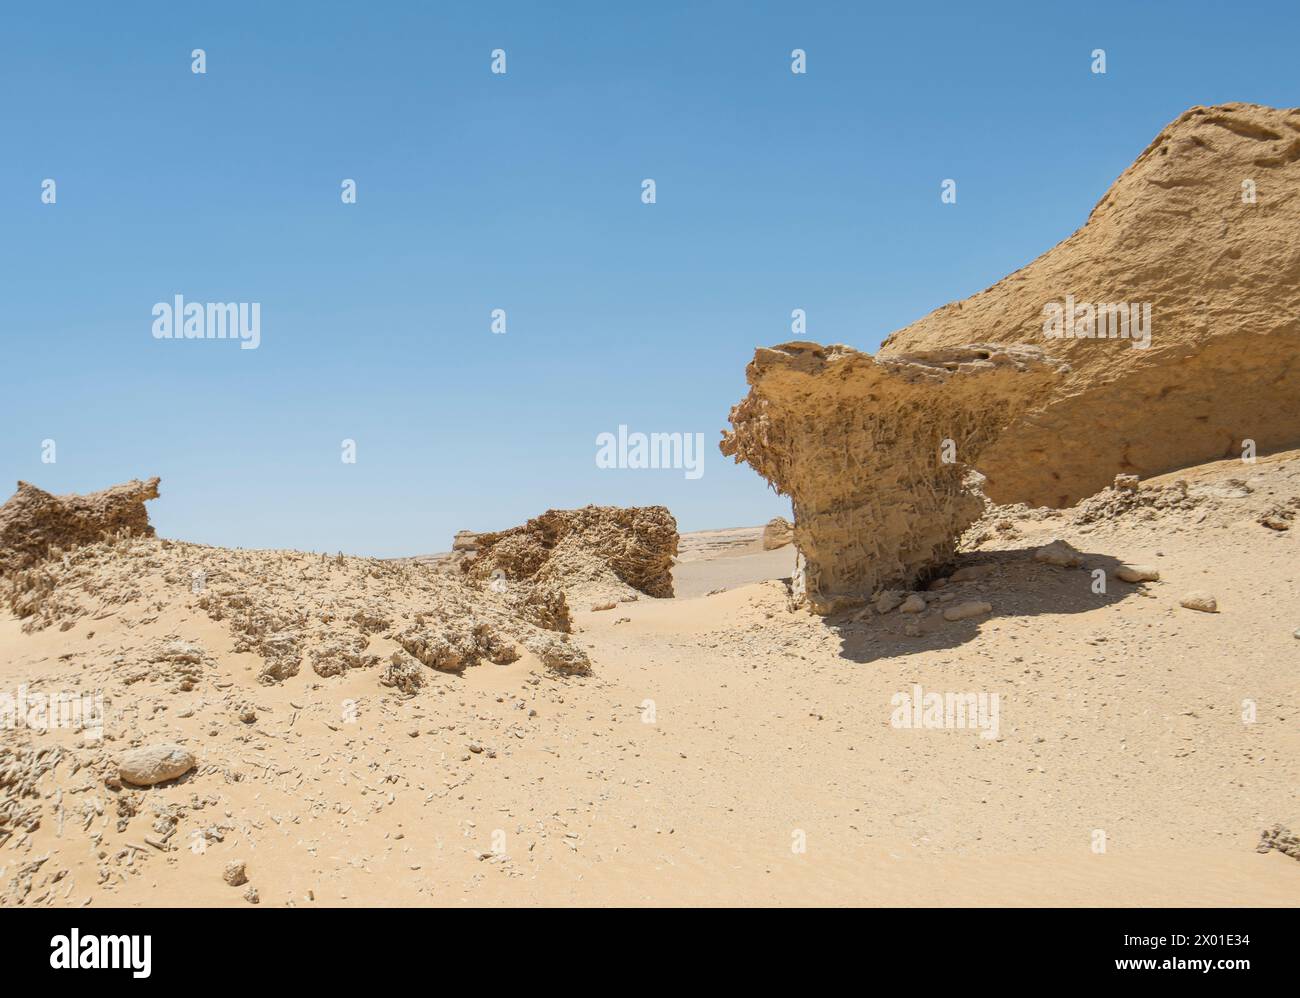 Vista panoramica del deserto occidentale desolato e arido in Egitto con formazioni geologiche di pietra arenaria e alberi di mangrovie fossili Foto Stock